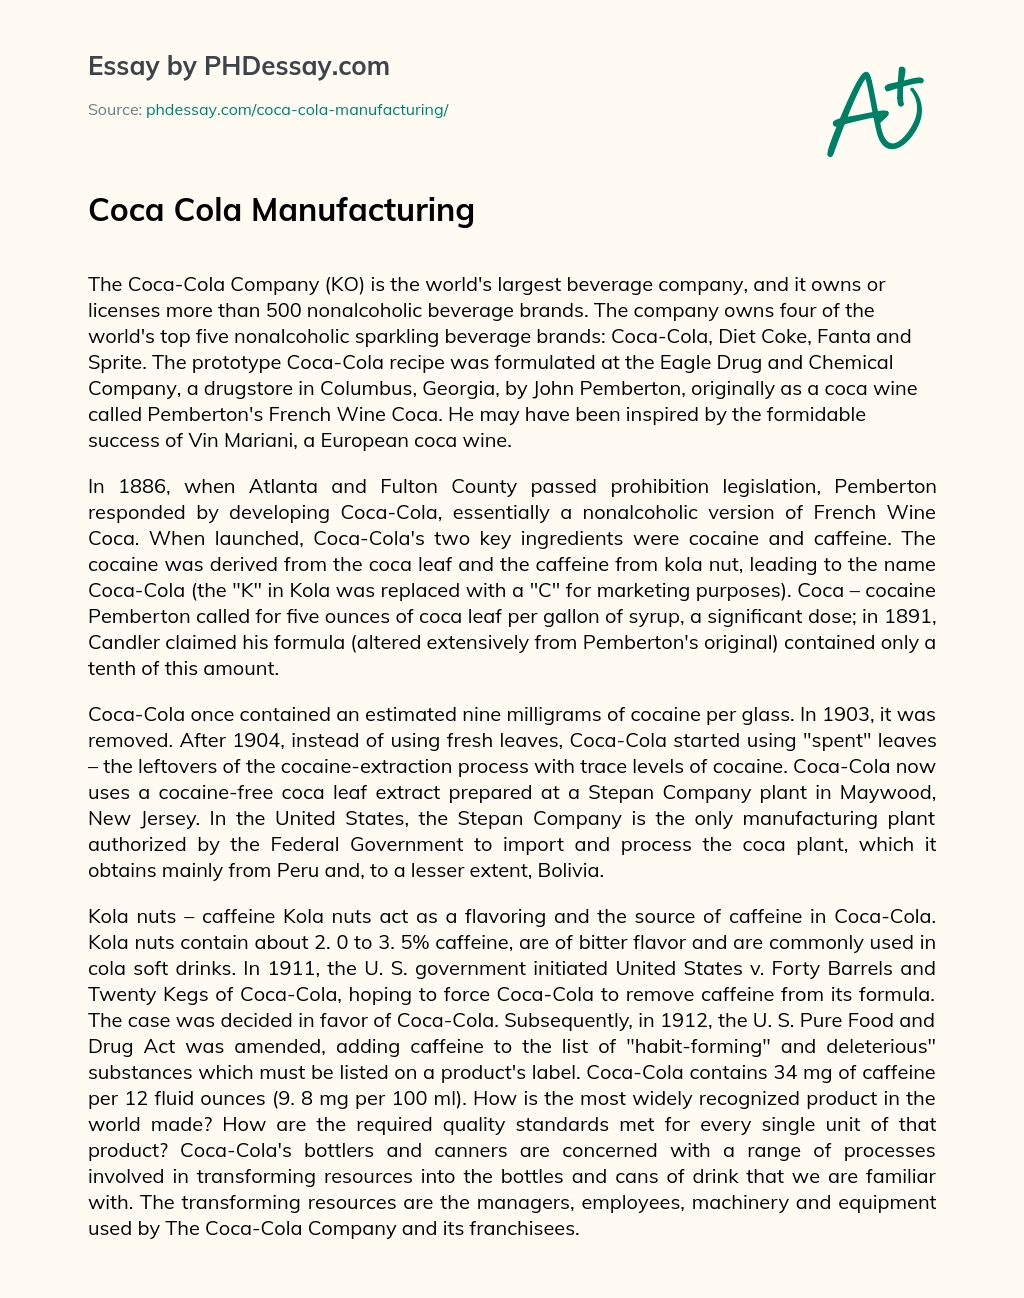 Coca Cola Manufacturing essay